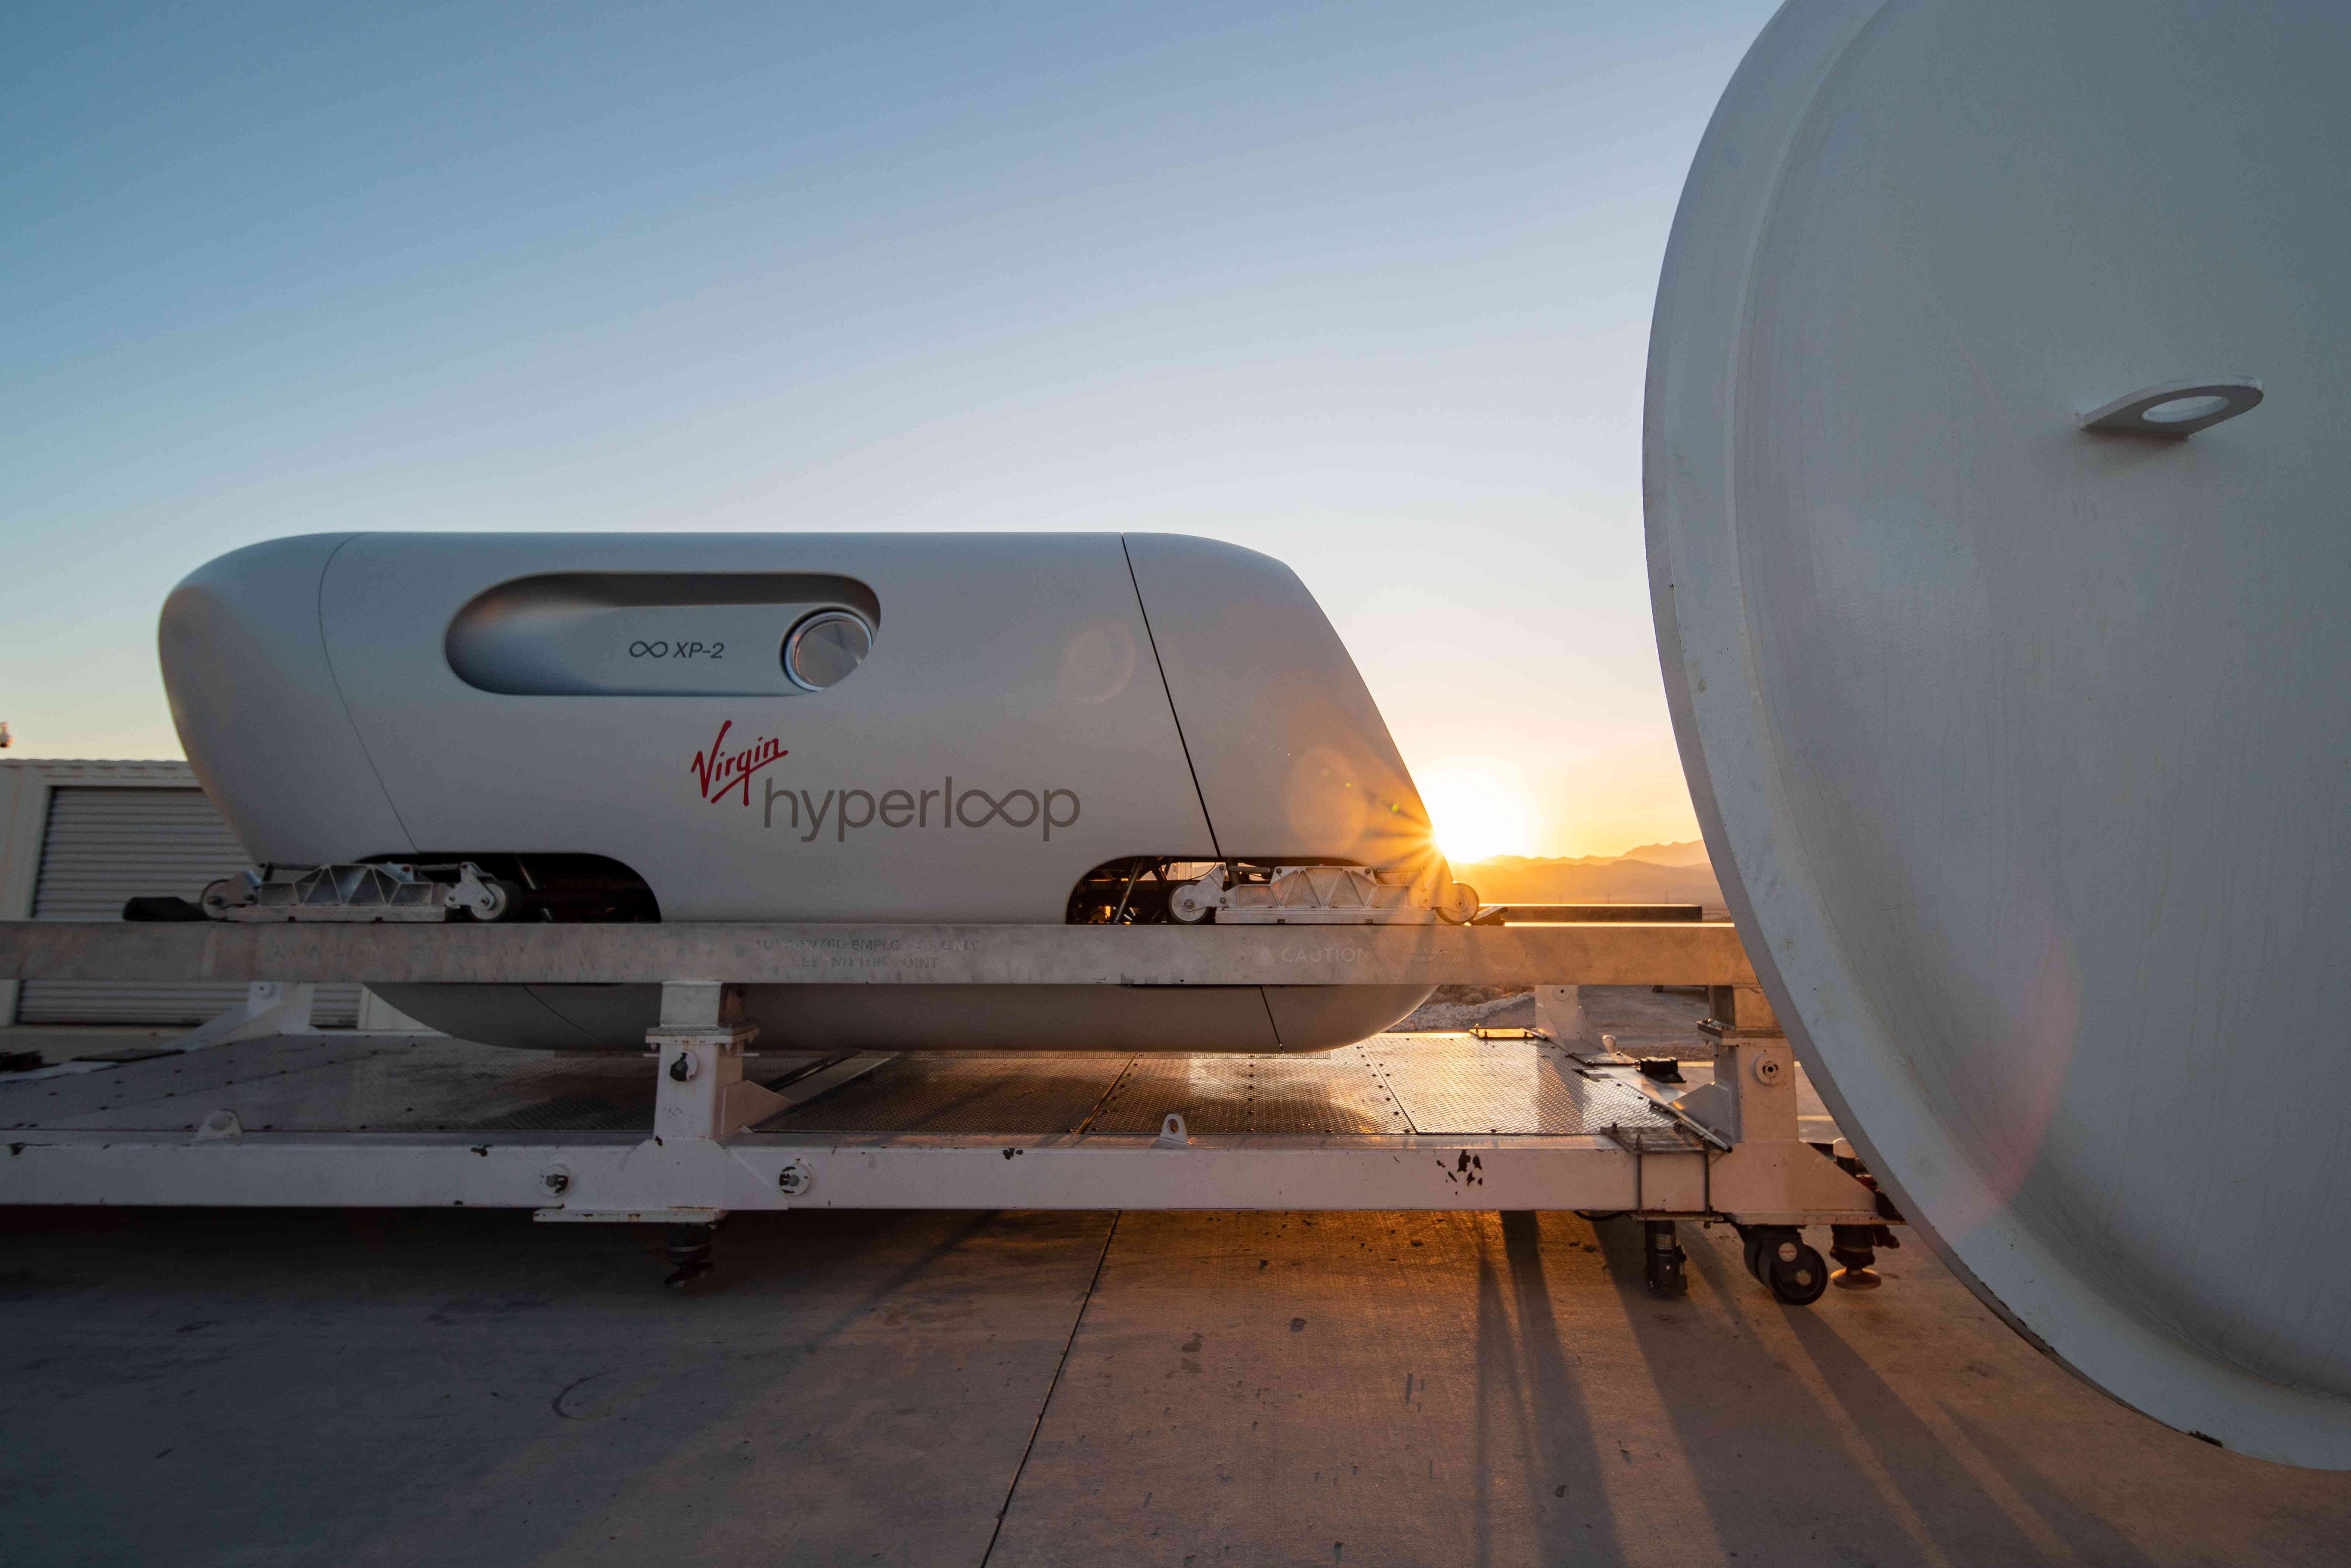 De testpod van Virgin Hyperloop rust op een platform met een zonsondergang erachter